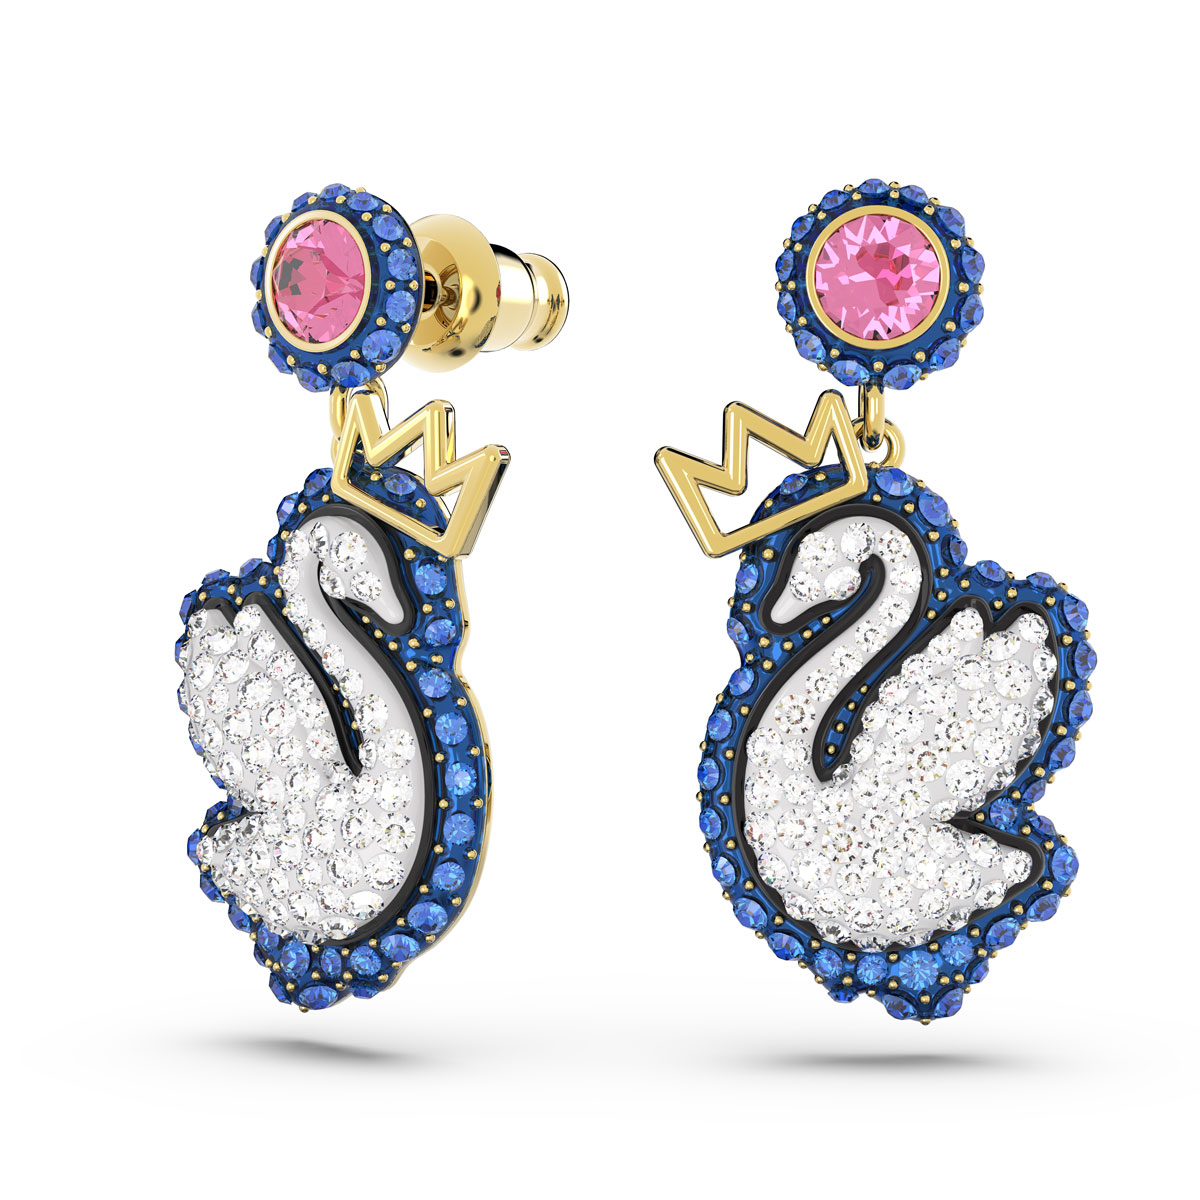 Swarovski Jewelry Pop Swan, Pierced Earrings Blue Gold